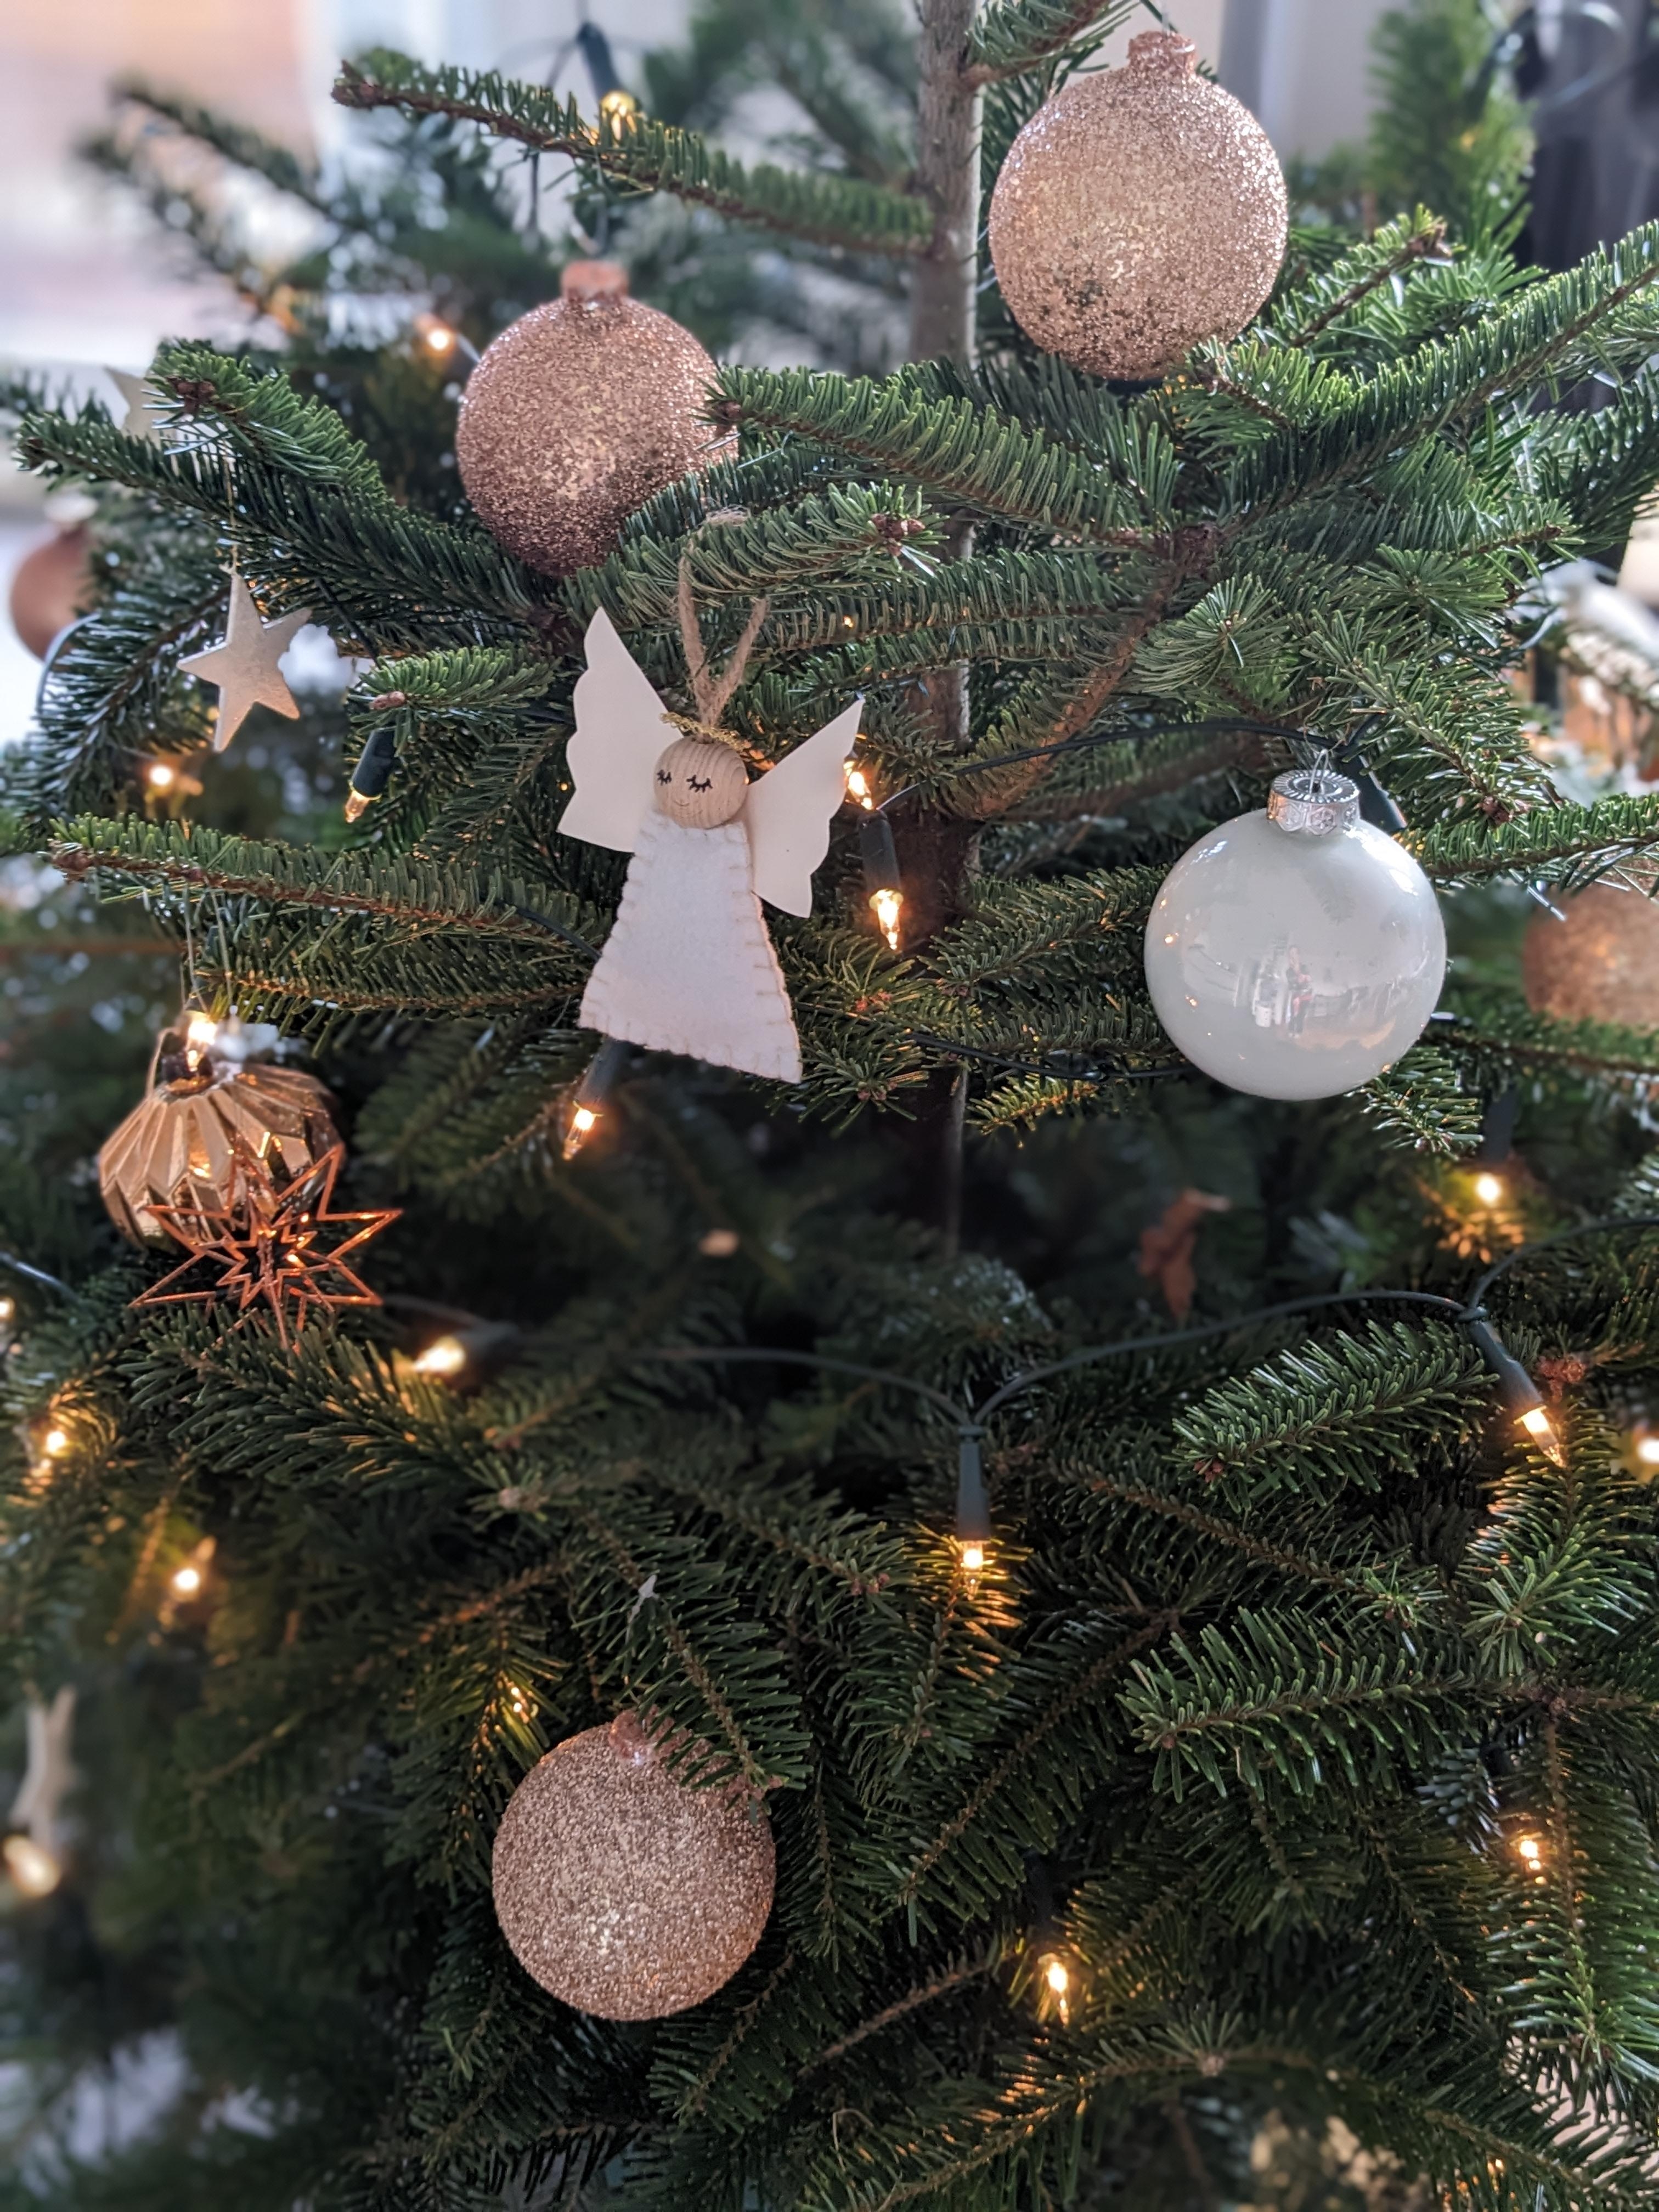 Der Baum steht und der Engel hängt 🎄✨👼
#xmas #weihnachten #weihnachtsbaum #diy #christmas